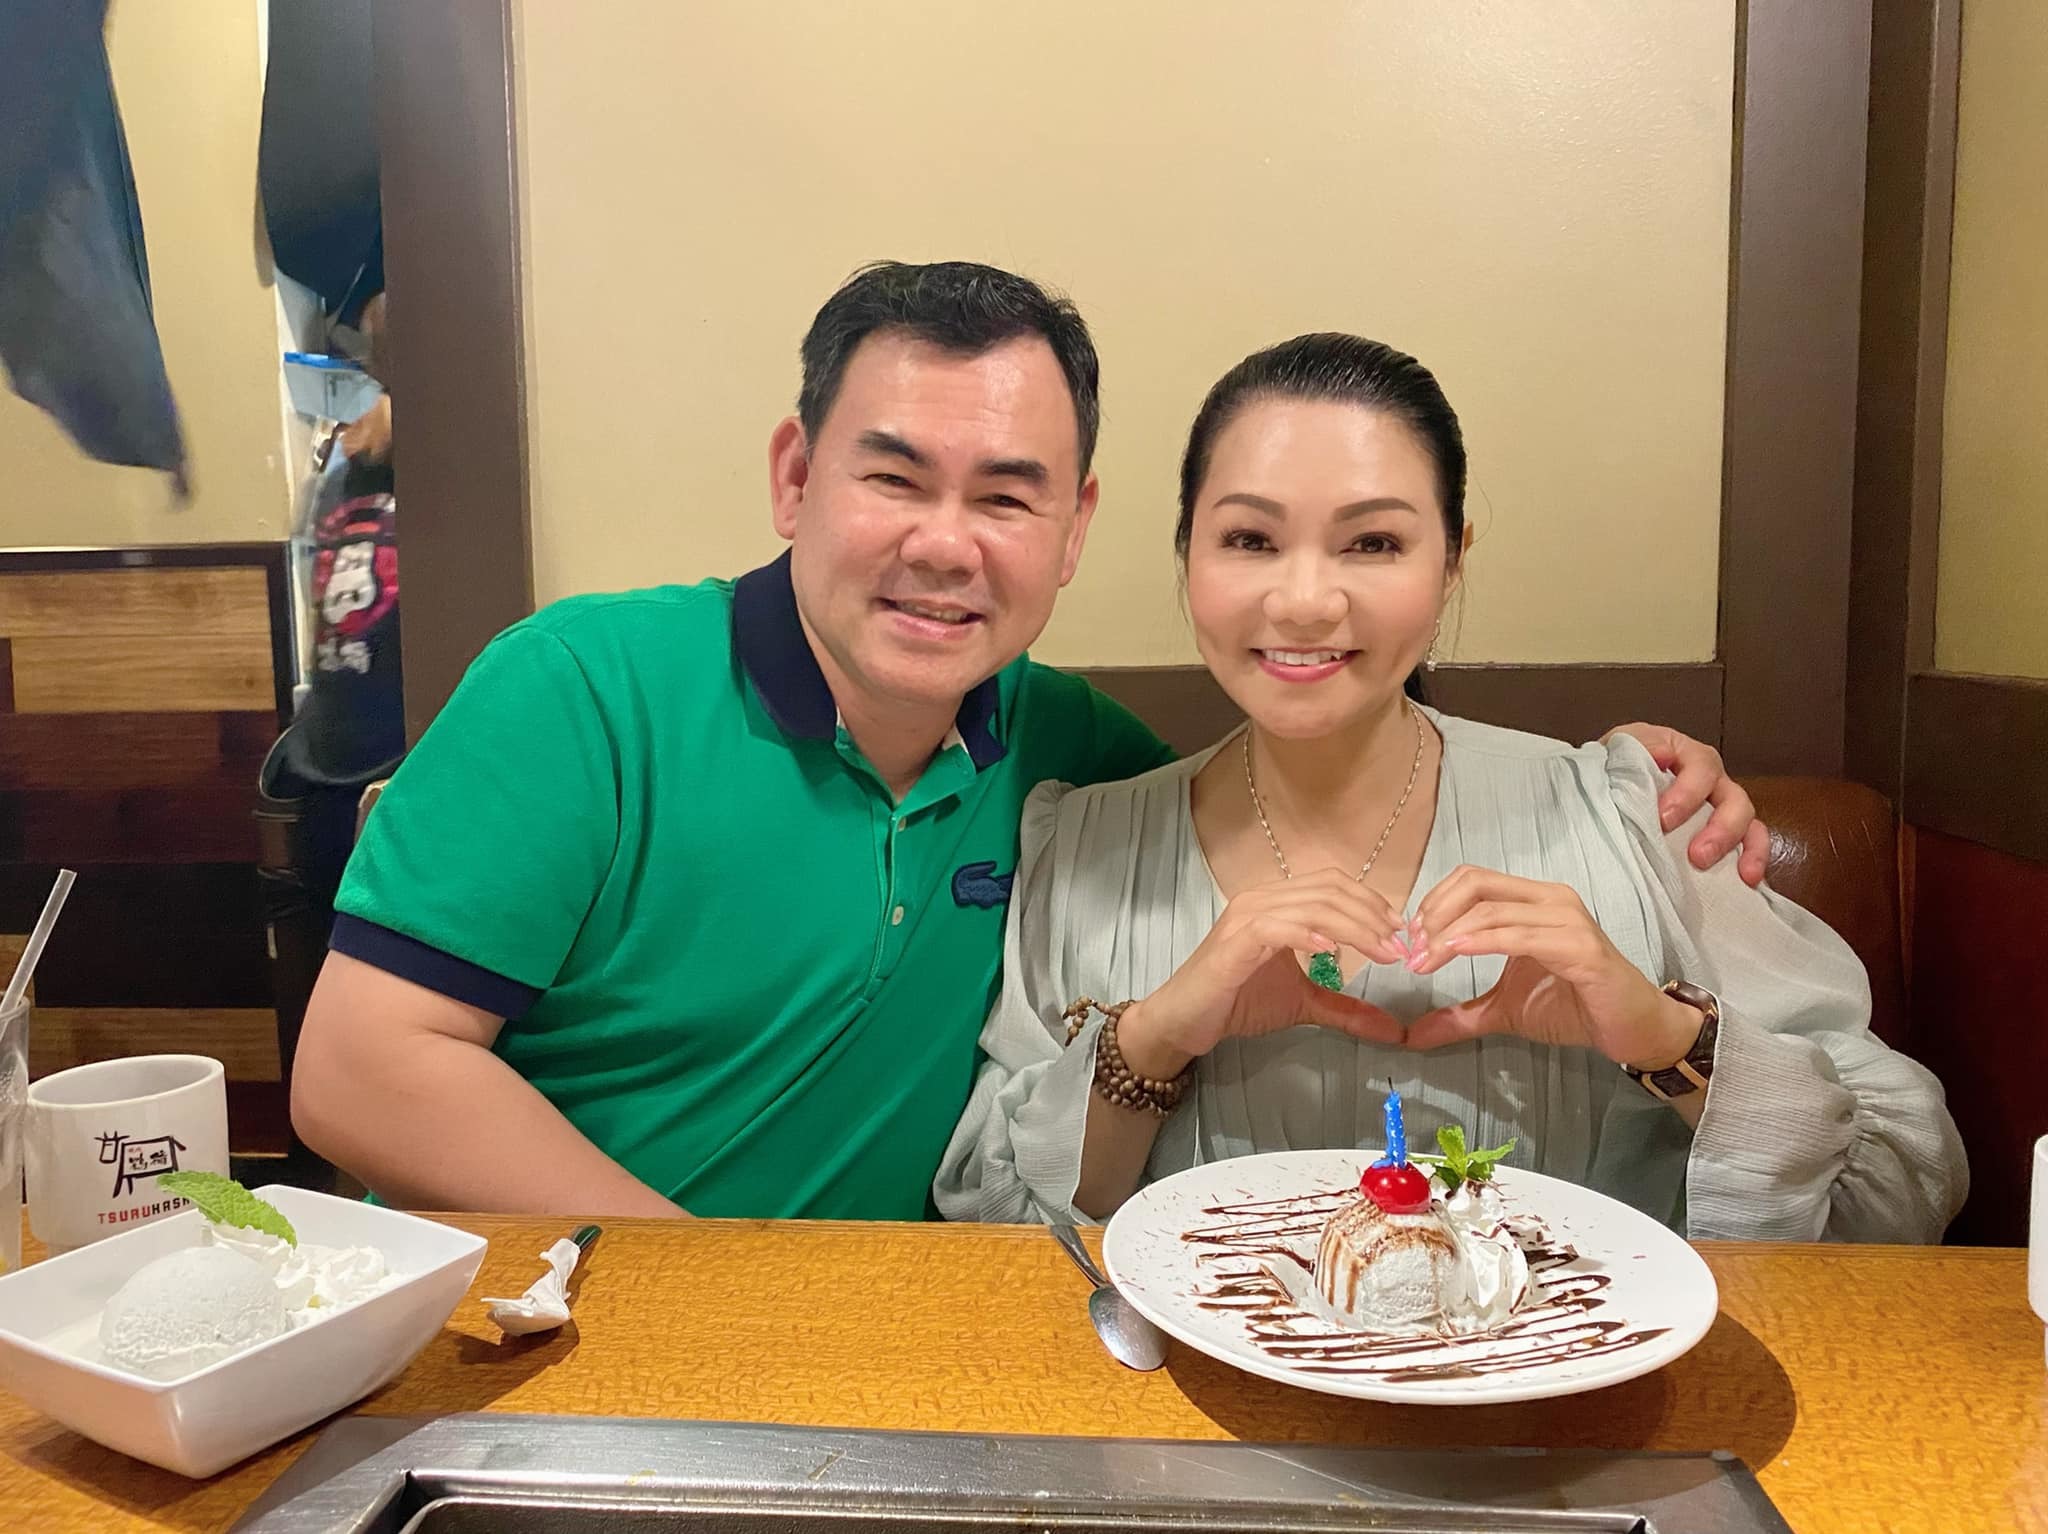 Hôn nhân 19 năm hạnh phúc của 'ngôi sao cải lương' Ngọc Huyền